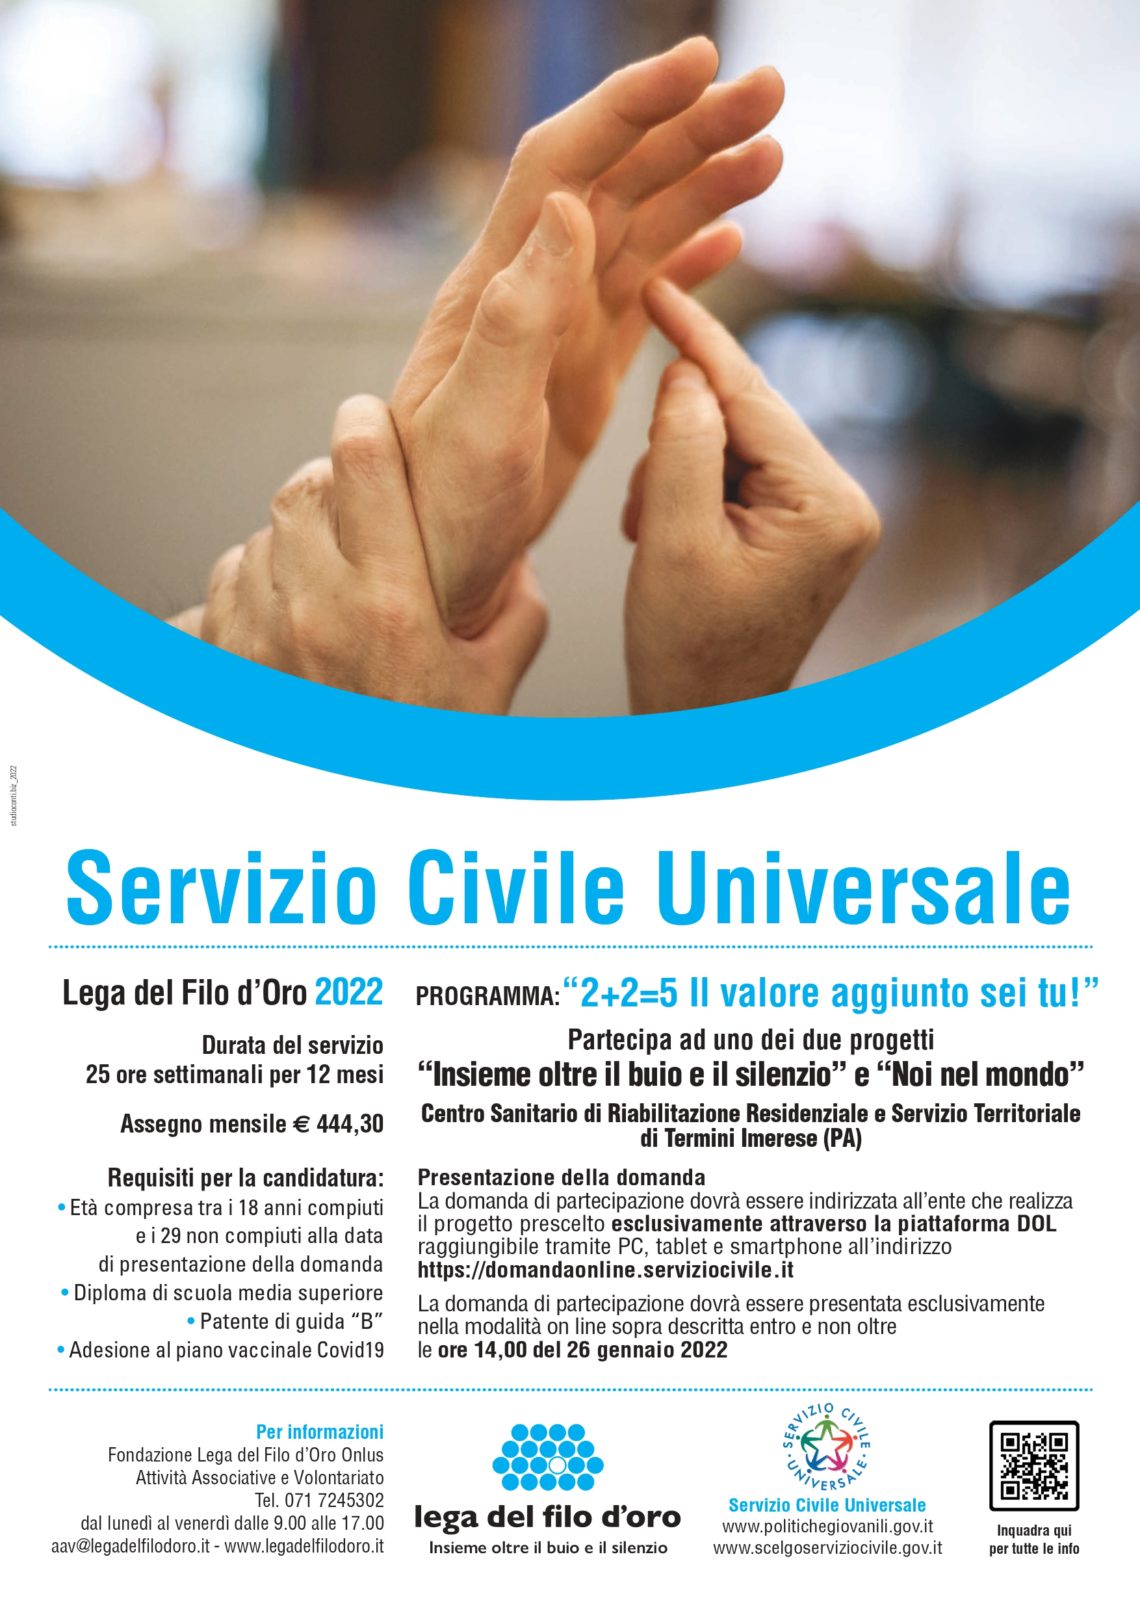 Servizio Civile Universale: aperte in Sicilia le iscrizioni per diventare volontari della Lega del Filo d’Oro.